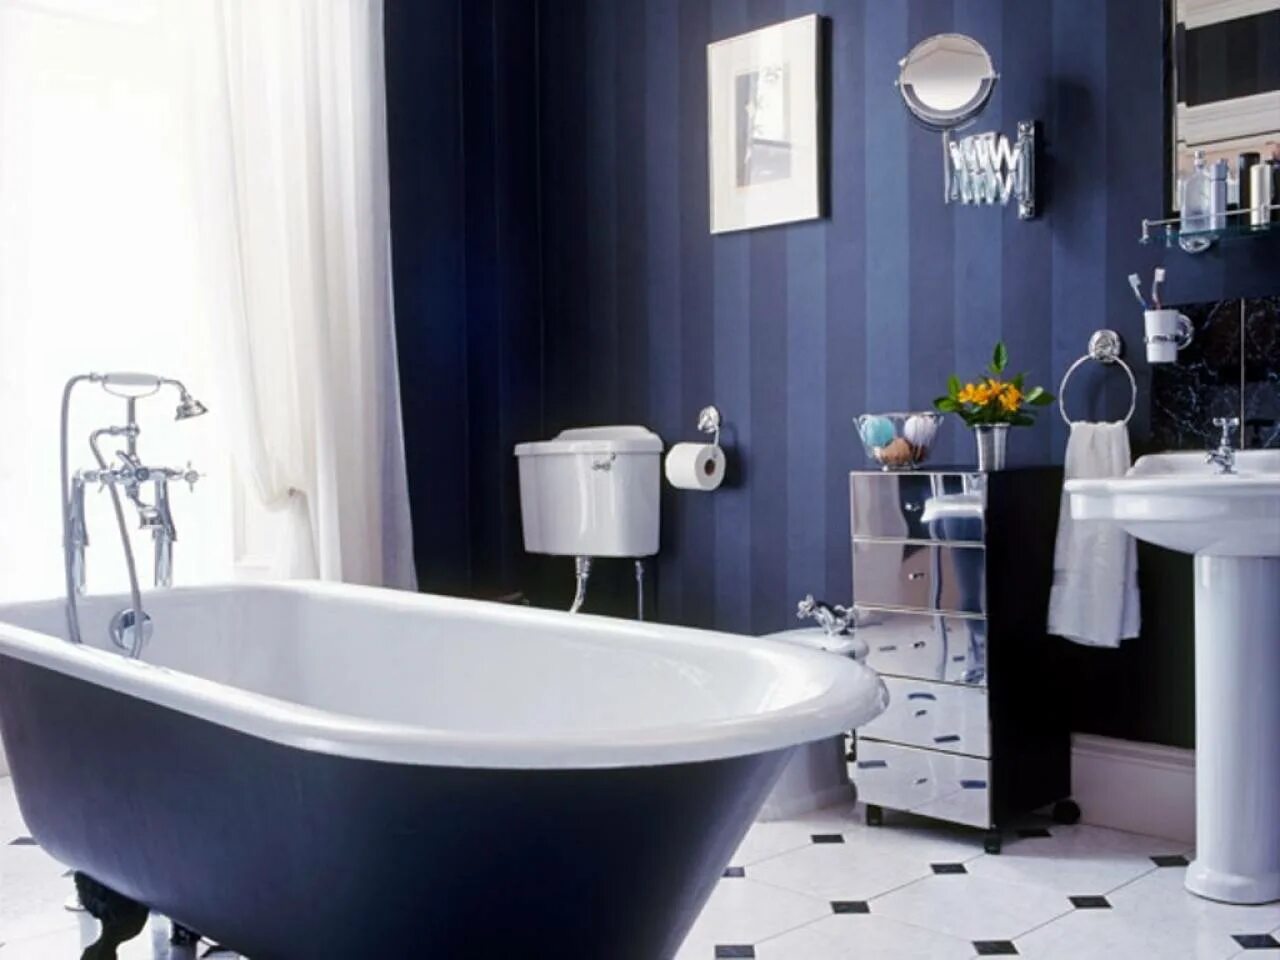 Фото сантехники ванной комнаты. Синяя ванная комната. Бело синяя ванная комната. Темно синяя ванная. Ванная комната в синем цвете.